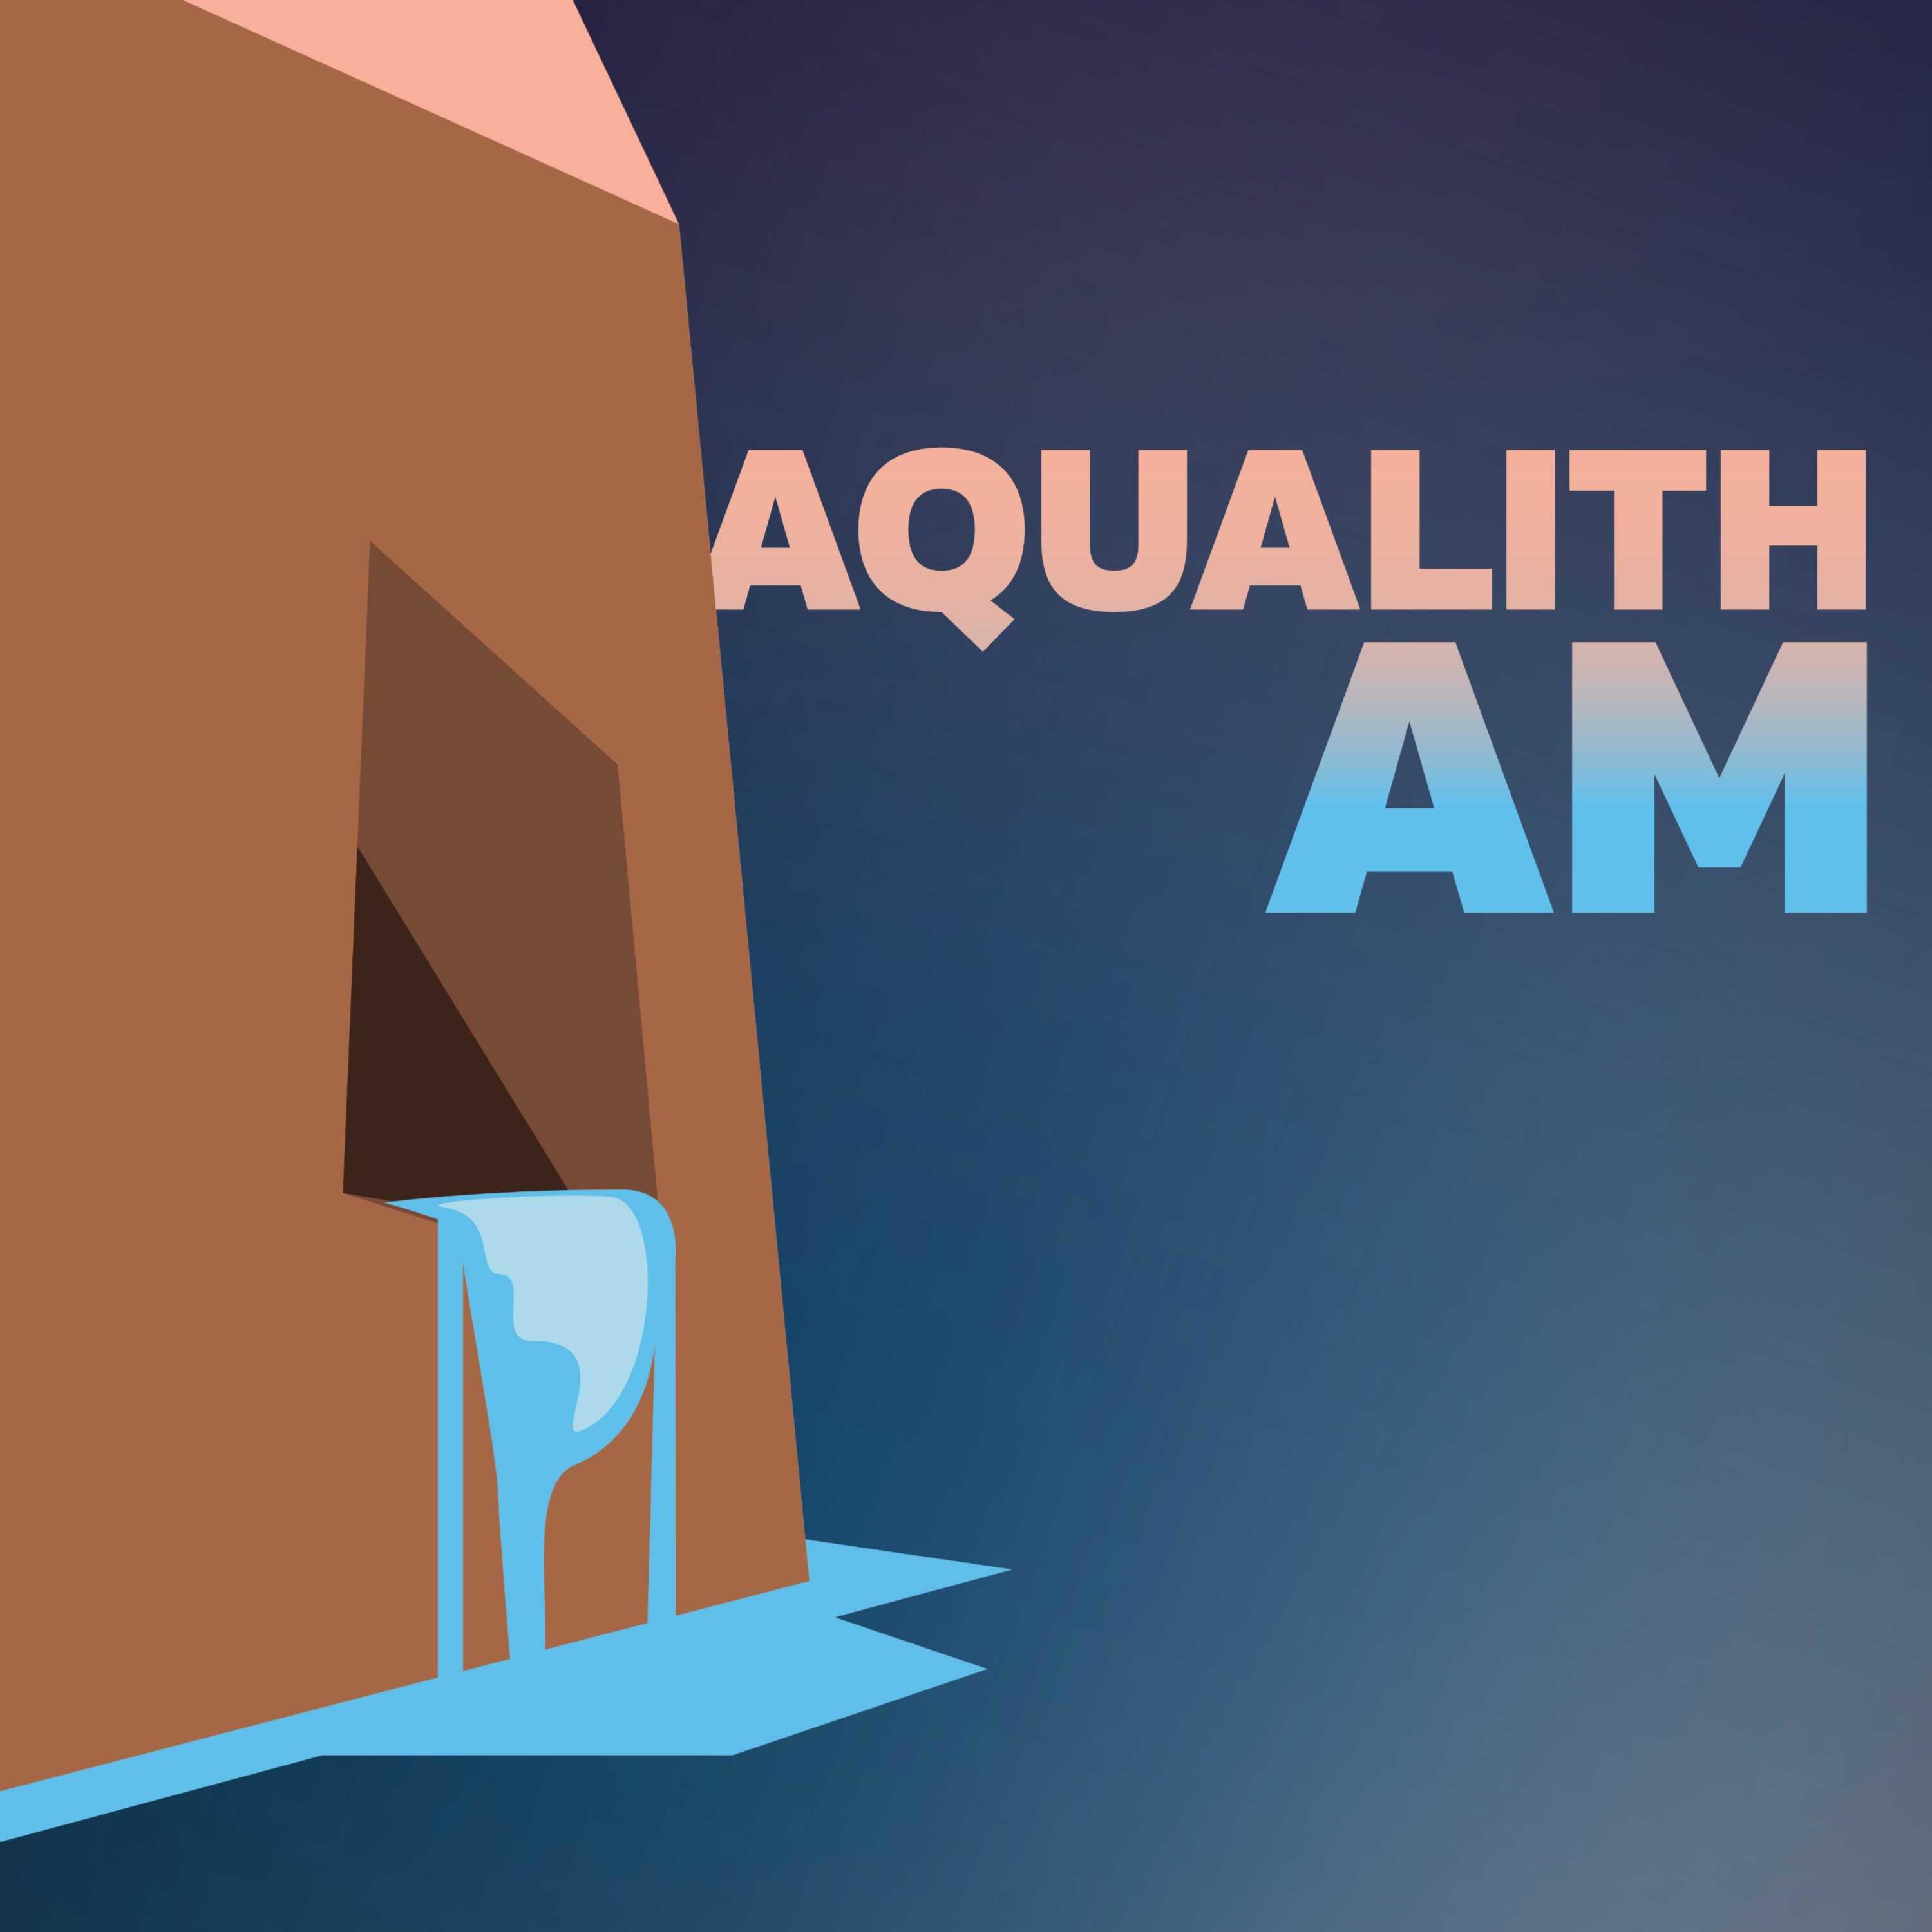 Aqualith AM